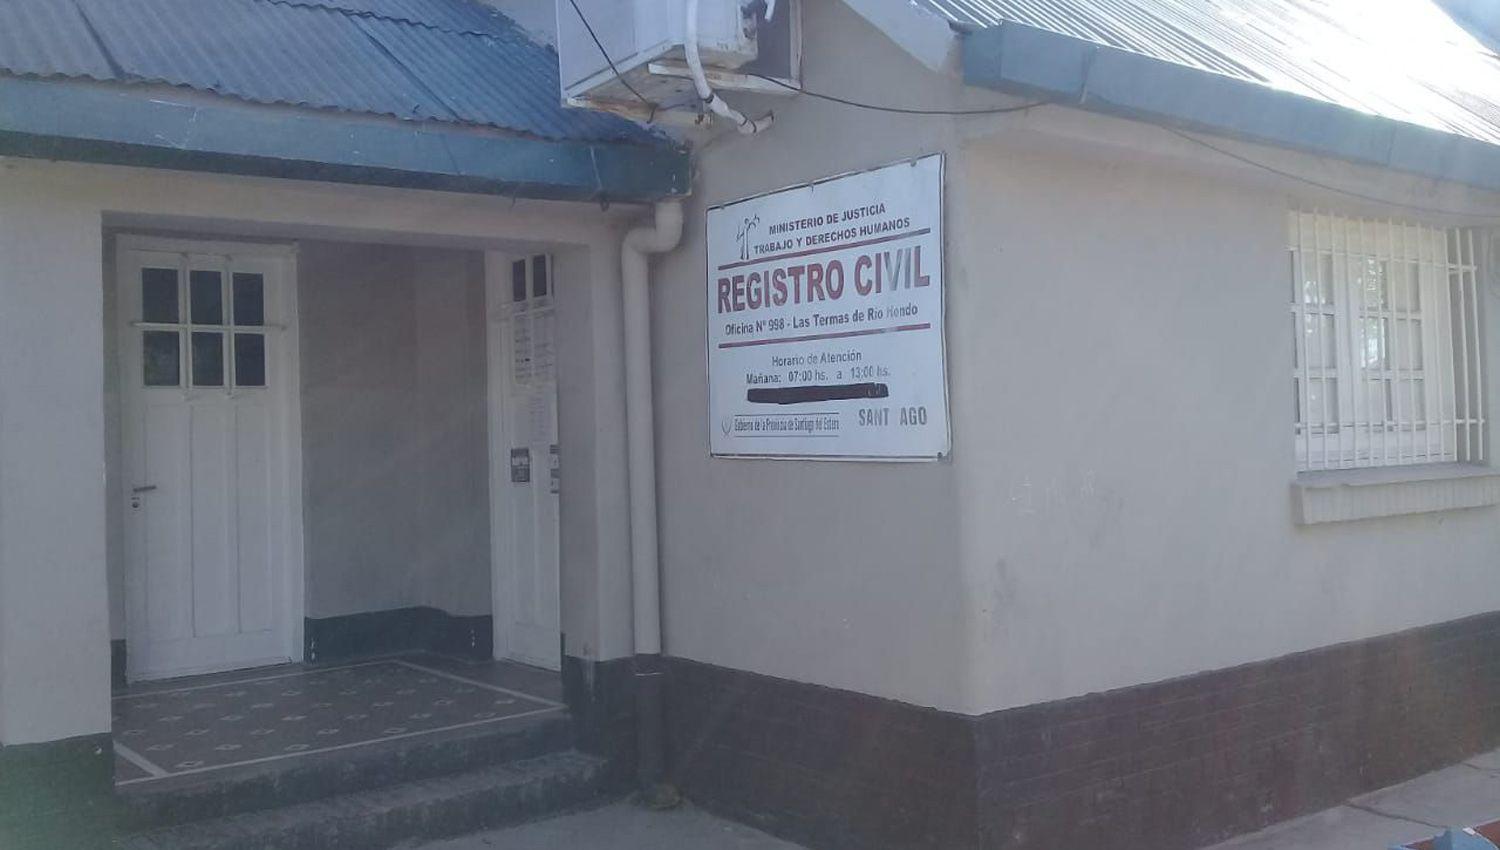 El Registro Civil informoacute que solo realiza traacutemites de nacimientos defunciones y entregas de DNI nuevos